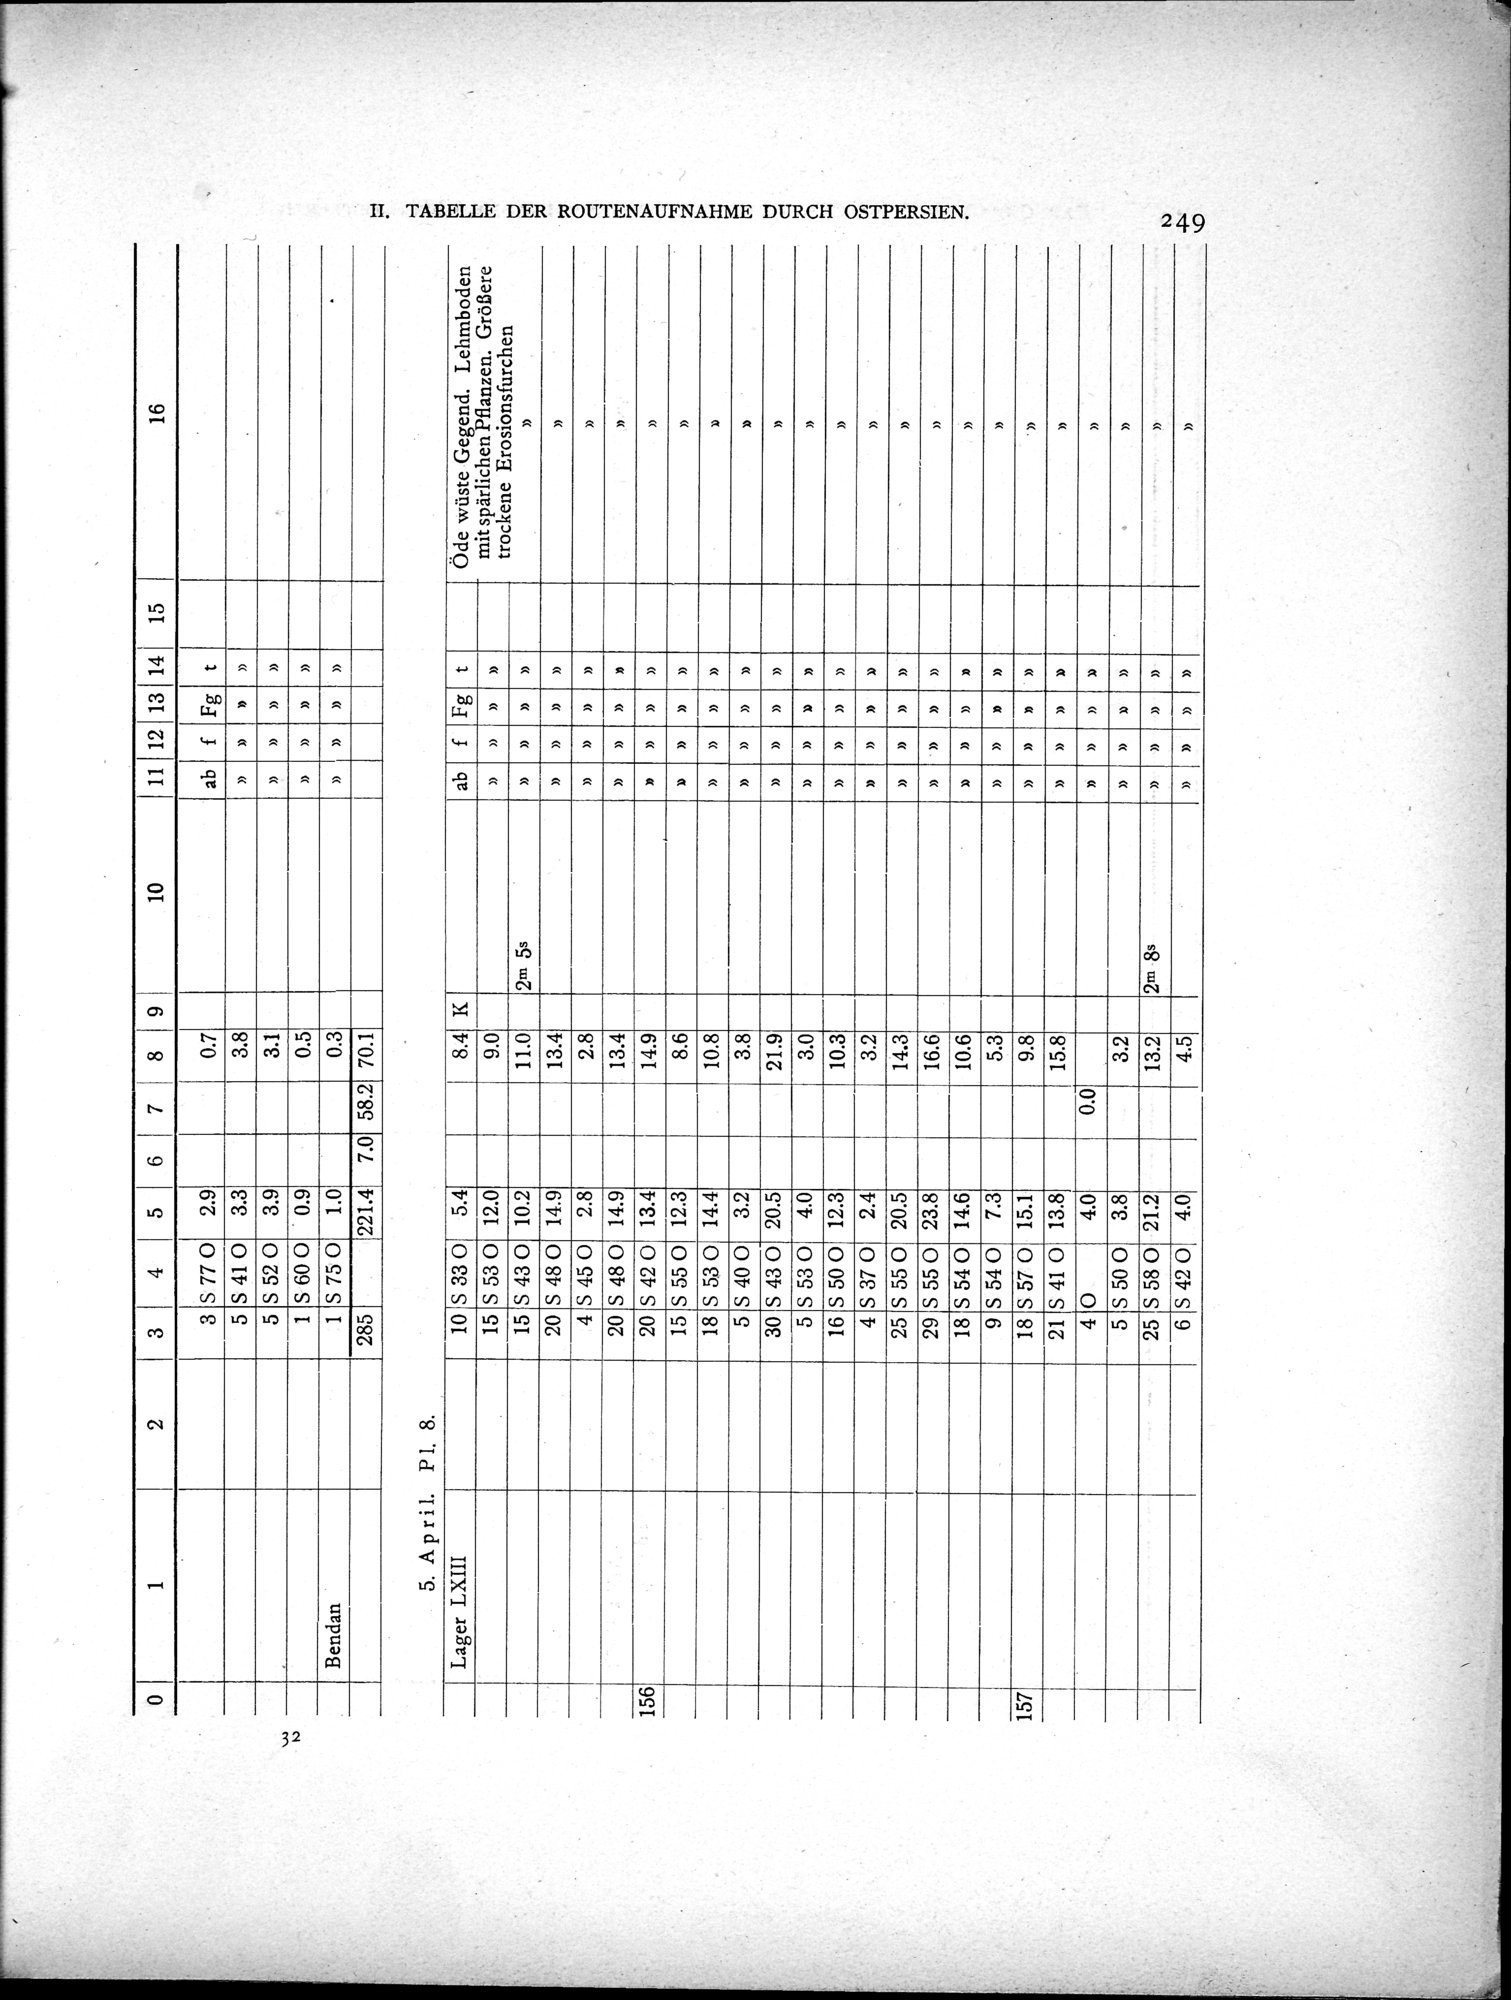 Eine Routenaufnahme durch Ostpersien : vol.2 / Page 319 (Grayscale High Resolution Image)